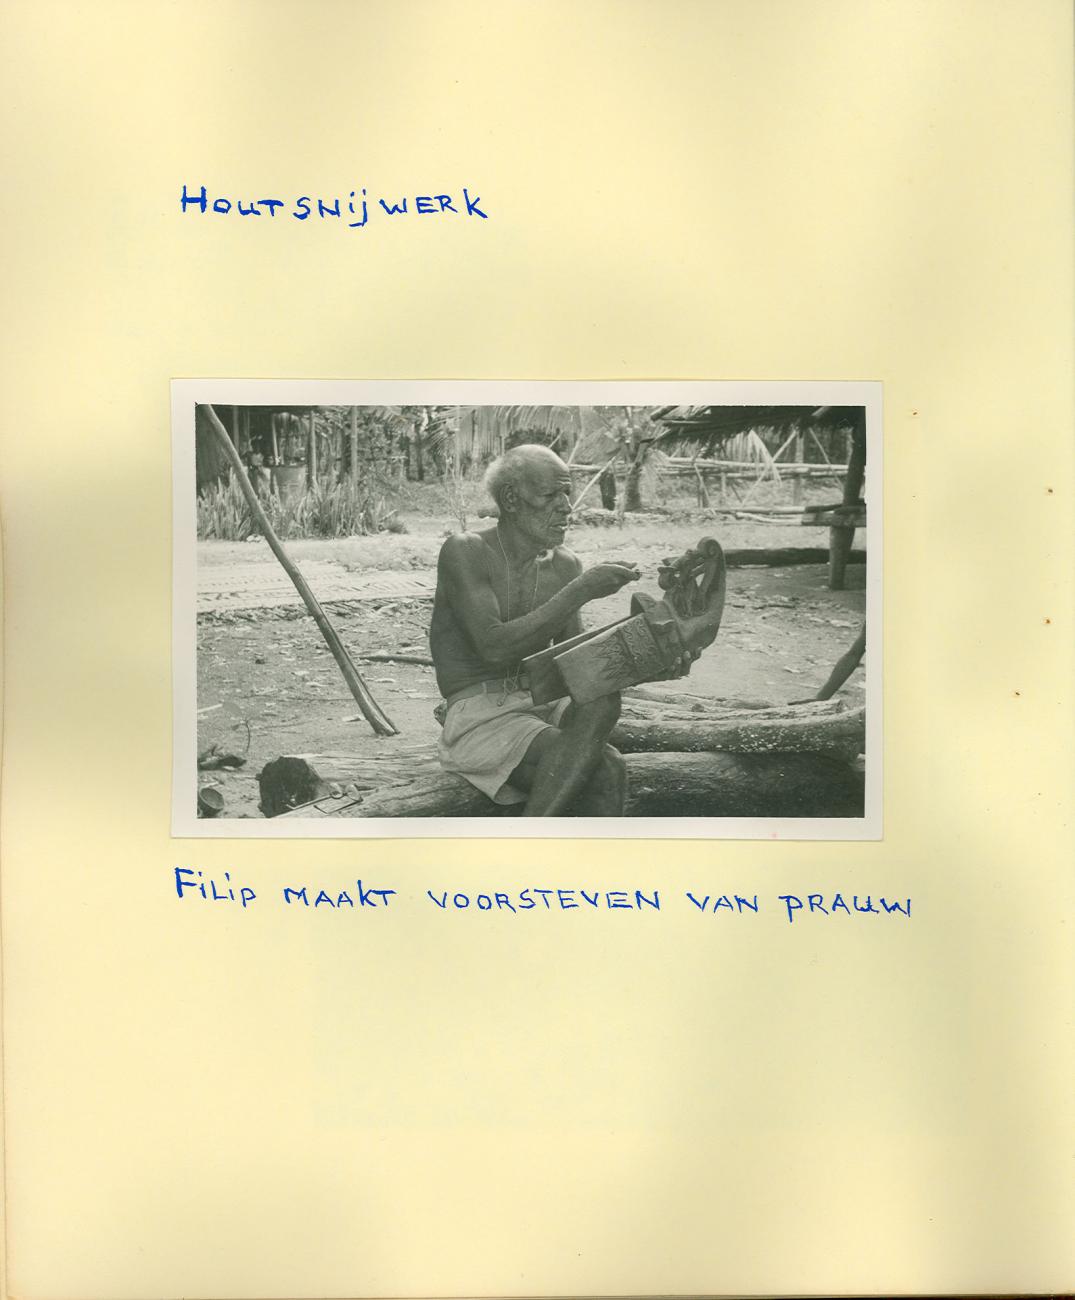 BD/83/56 - 
Papoea-man bezig met houtsnijwerk voor de voorsteven van een prauw
